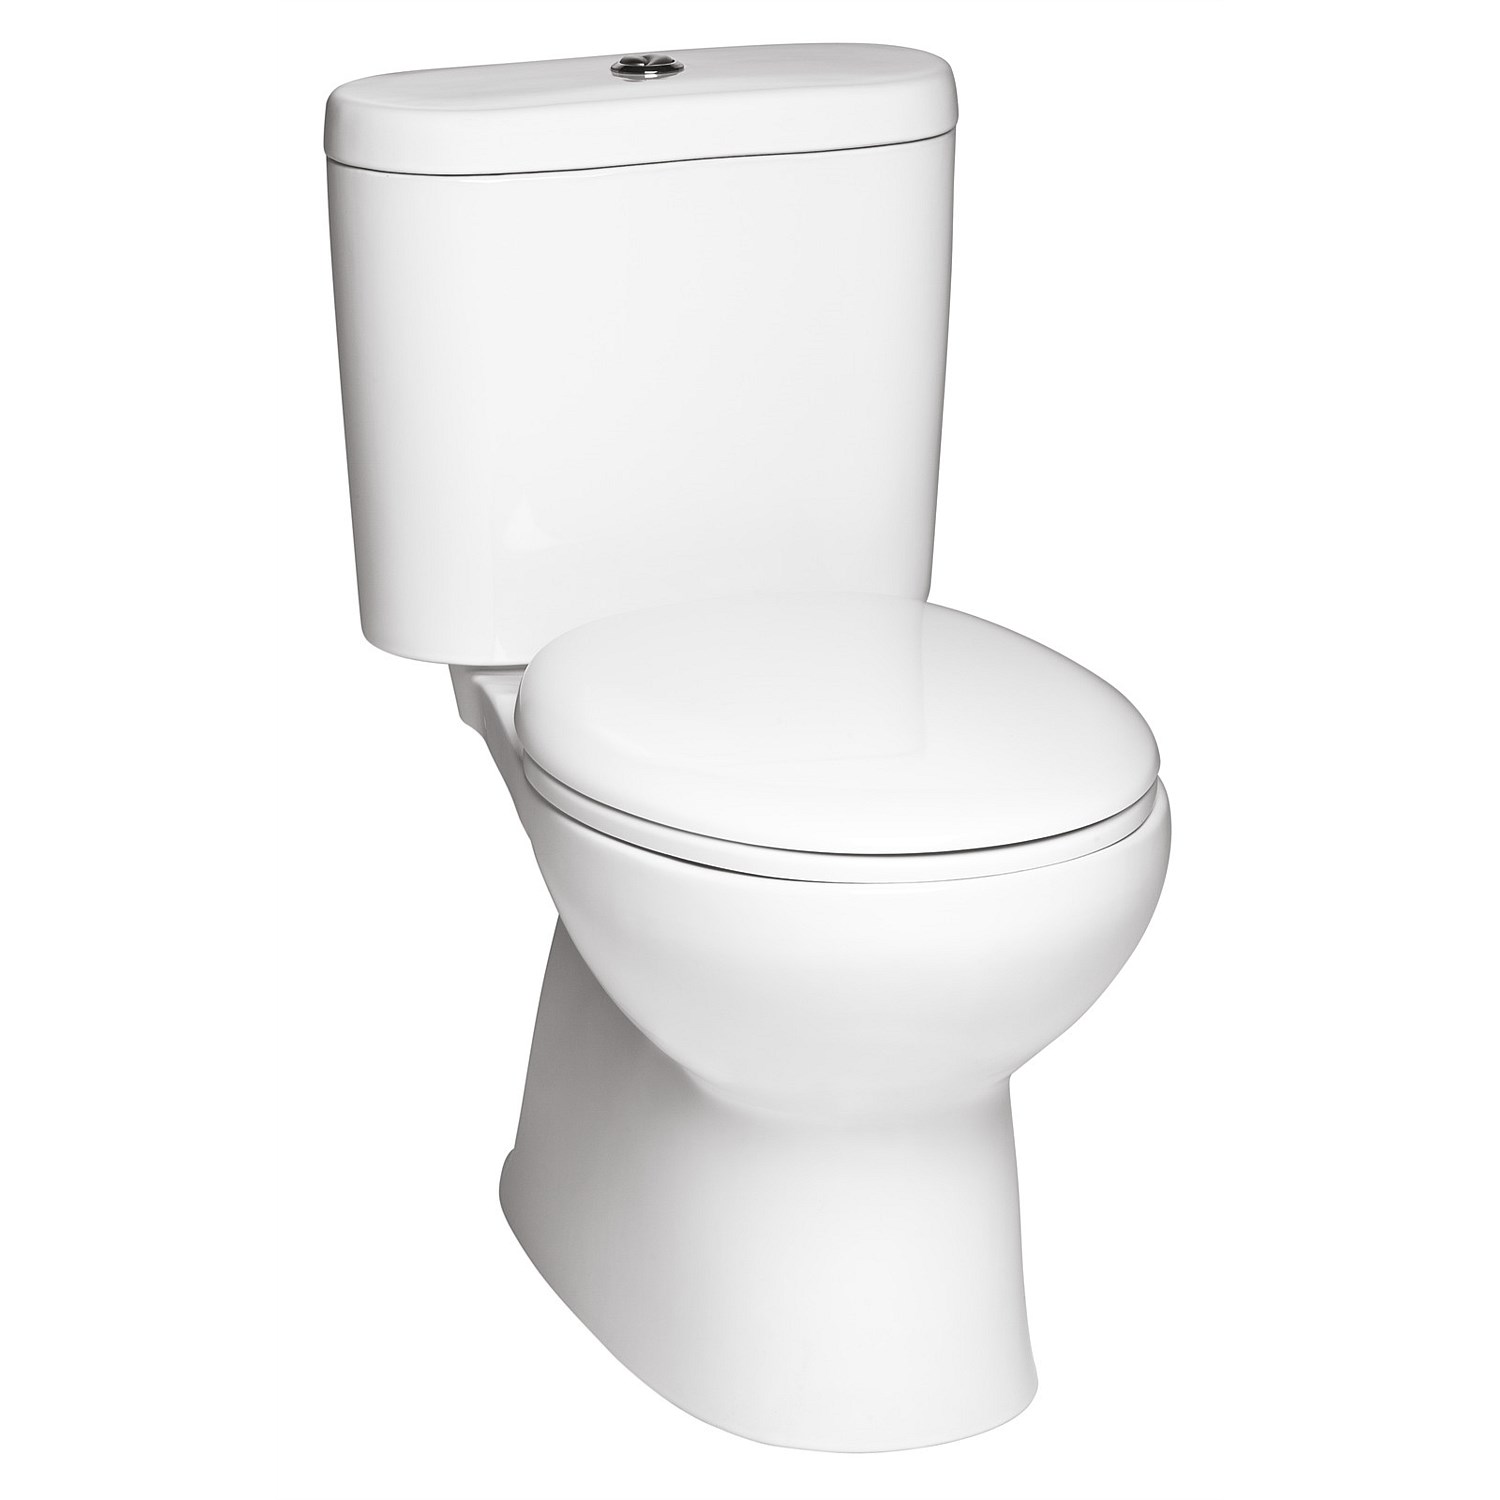 Toilet Suites | Plumbing World - Toto Valdes Close-Coupled Toilet Suite